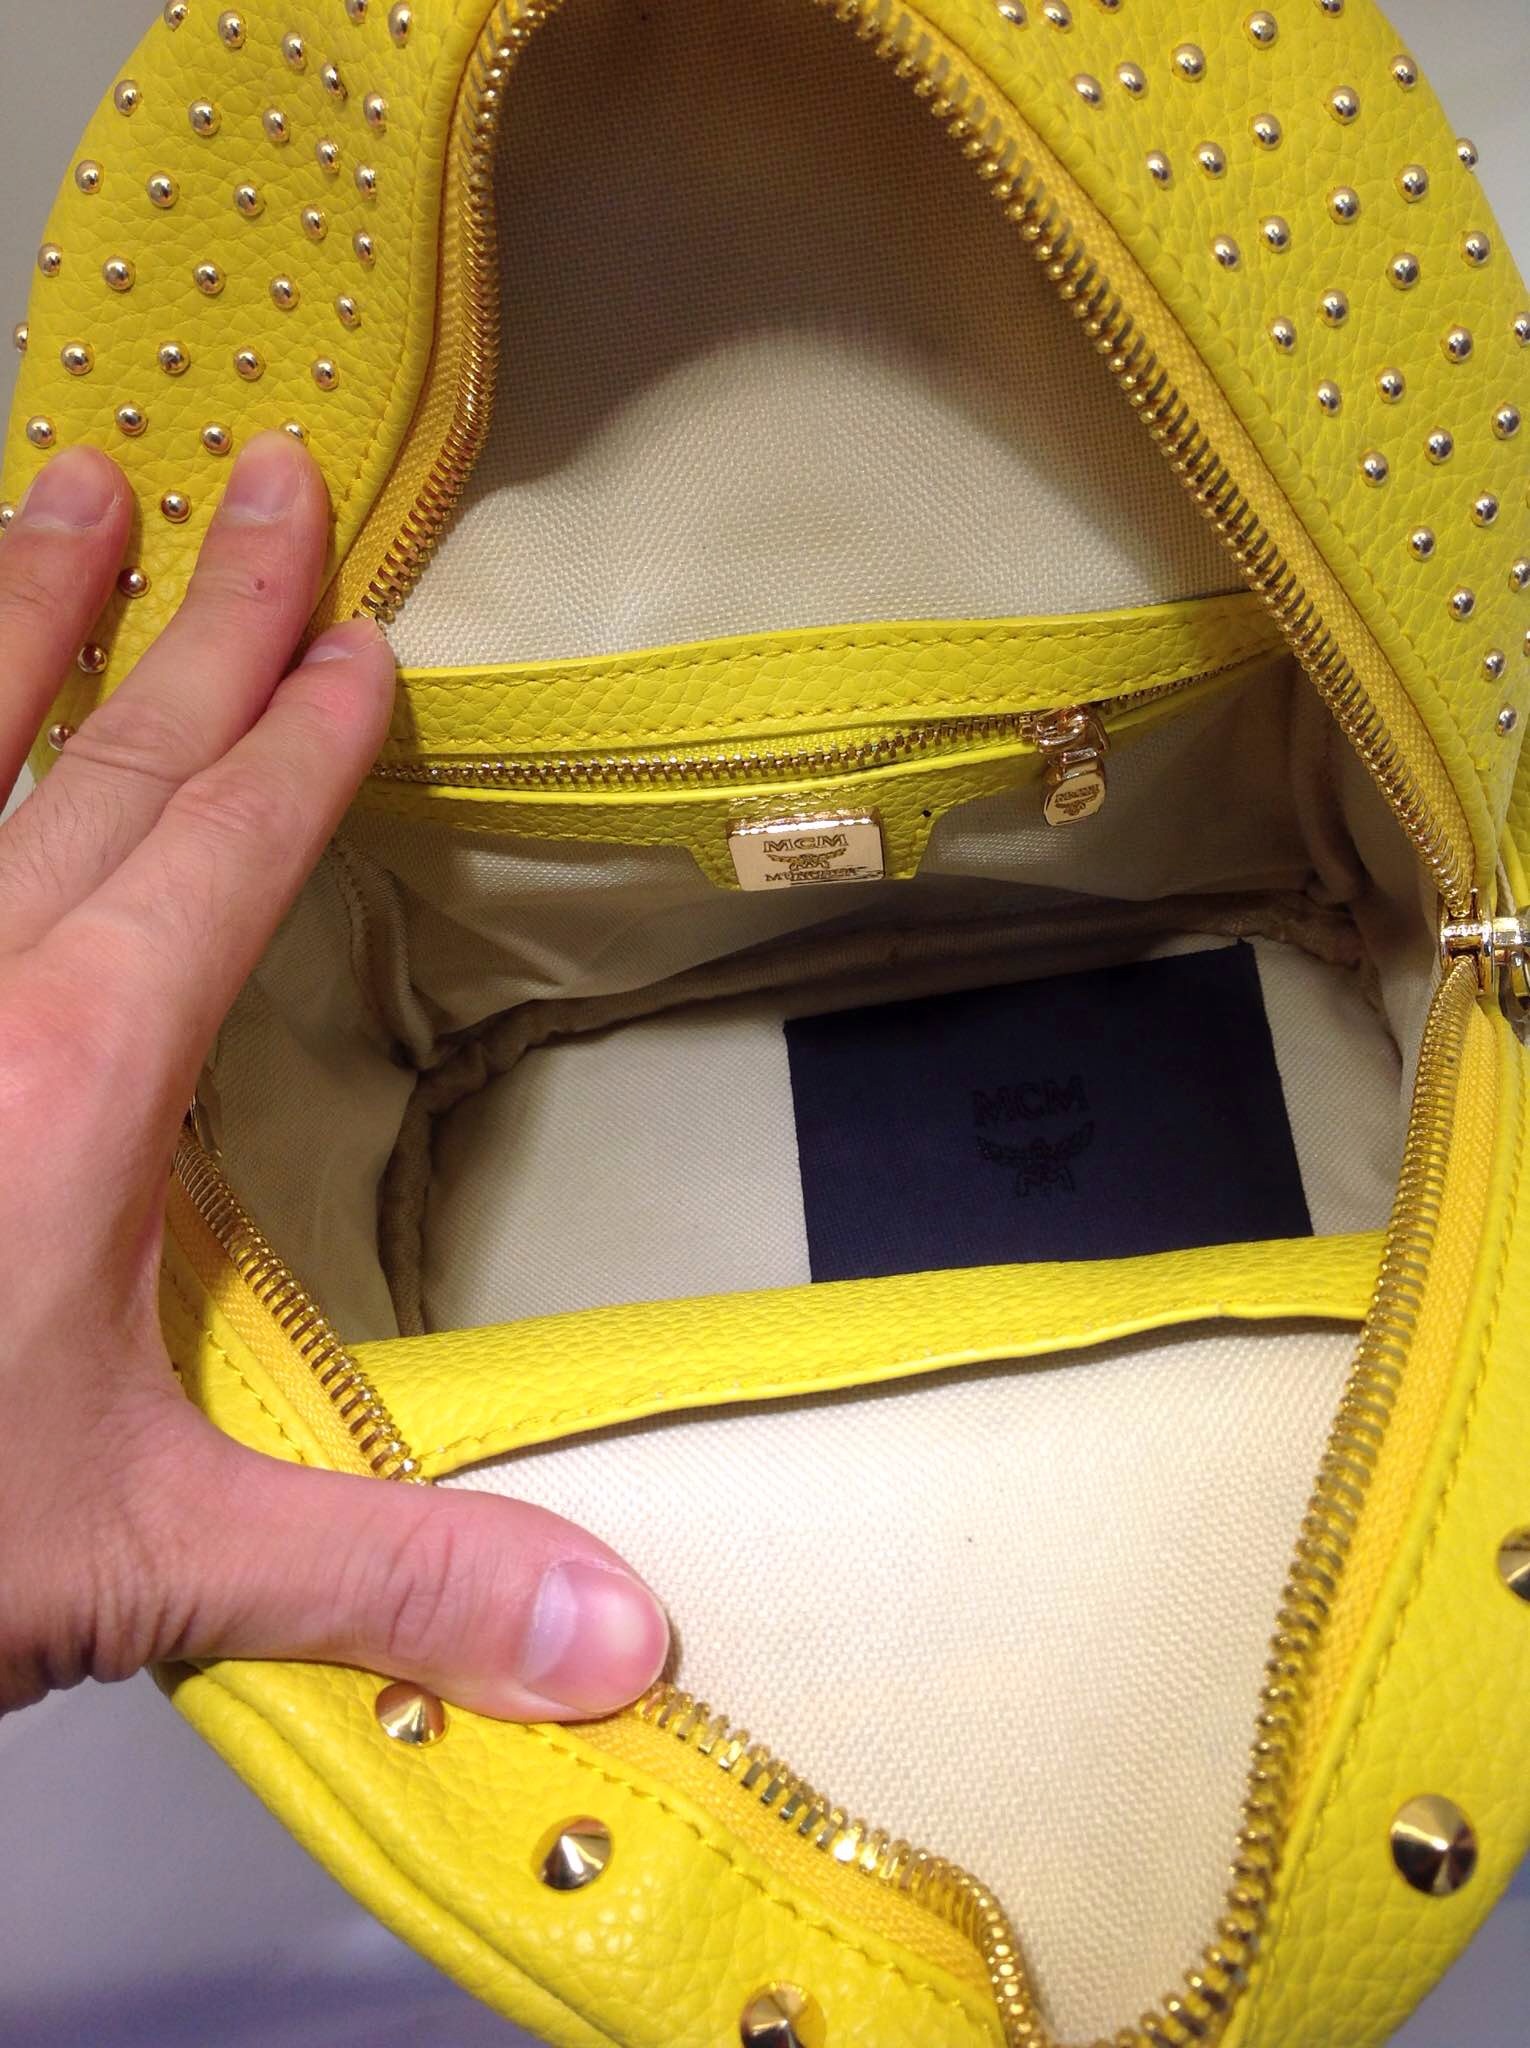 MCM女士背包 正品品质斜挎包 柠檬黄 进口原版皮